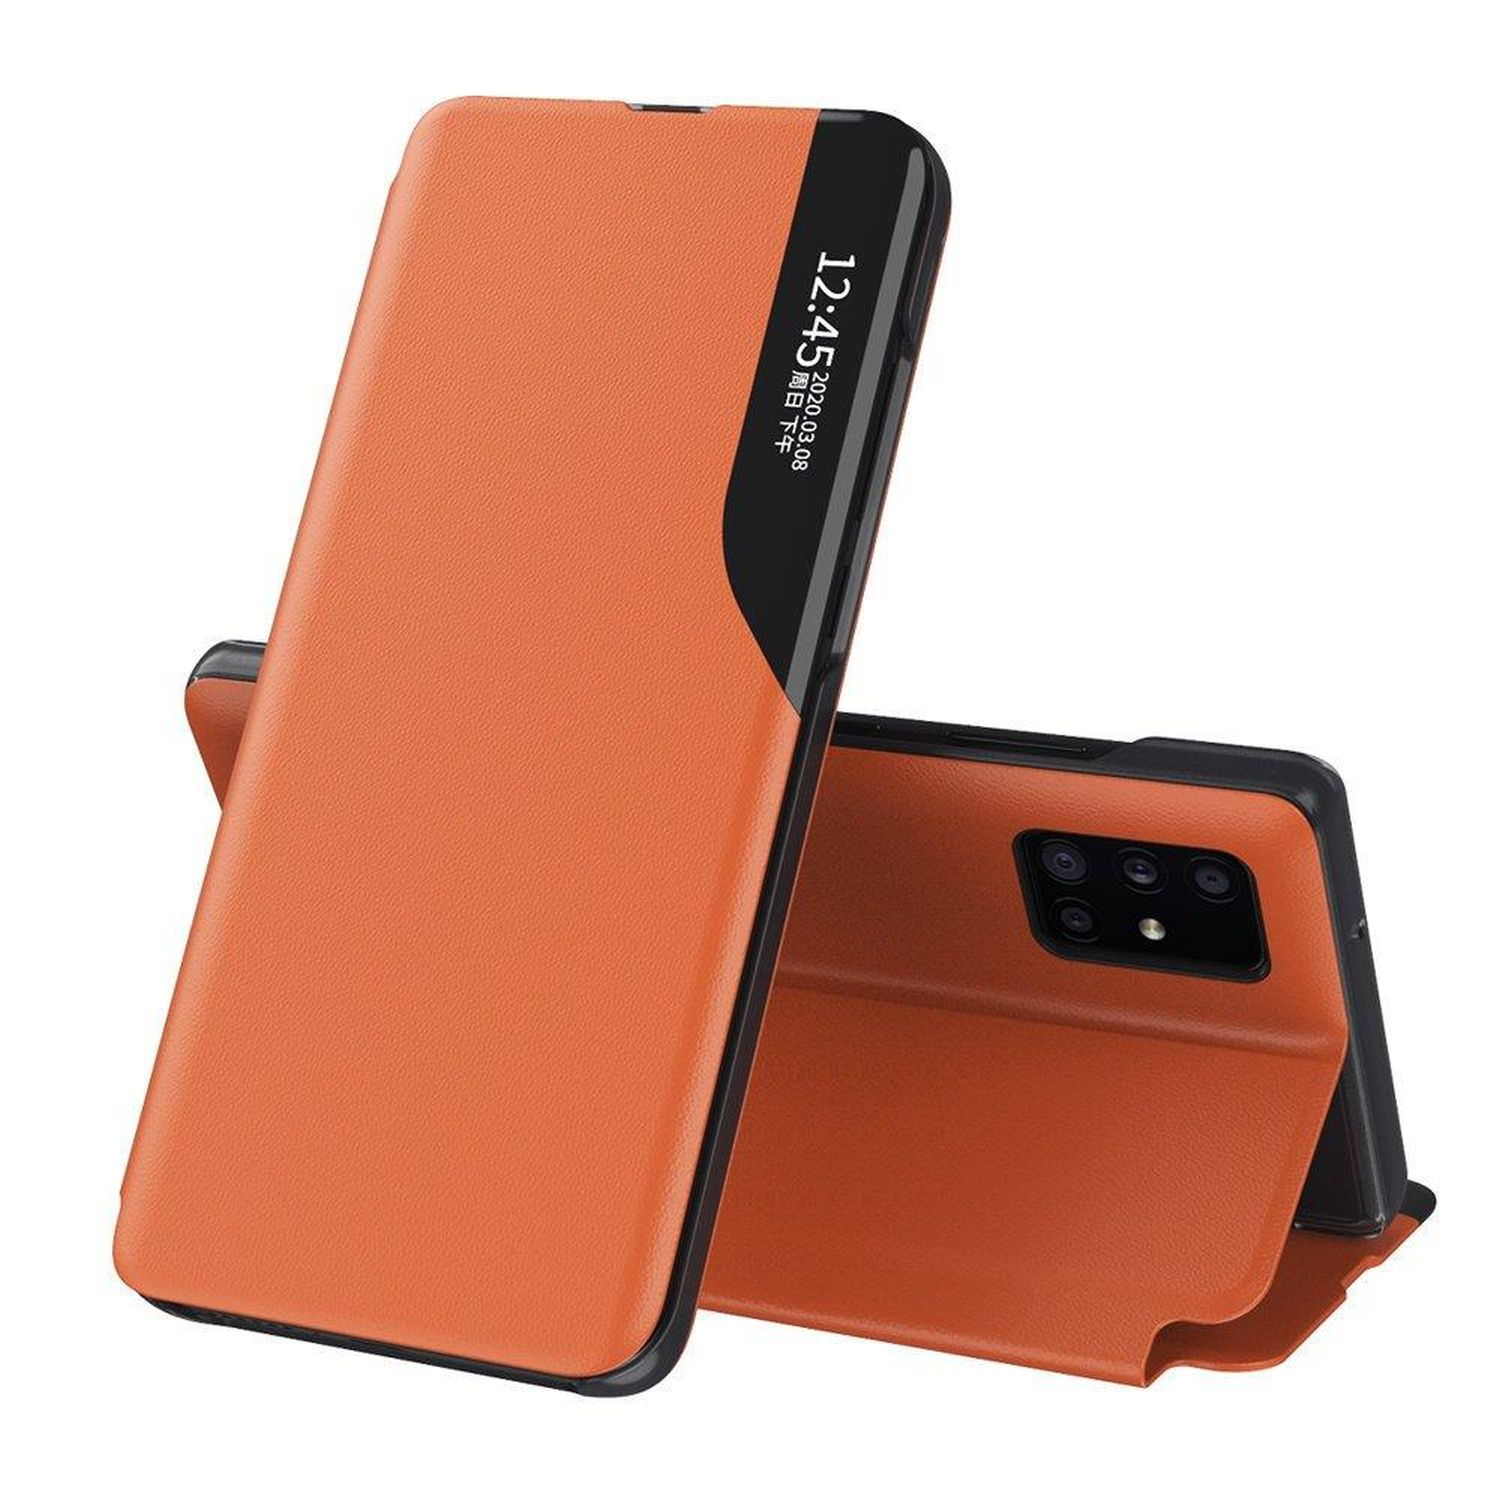 View Bookcover, Samsung, COFI 10 Plus, Note Smart Galaxy Case, Orange